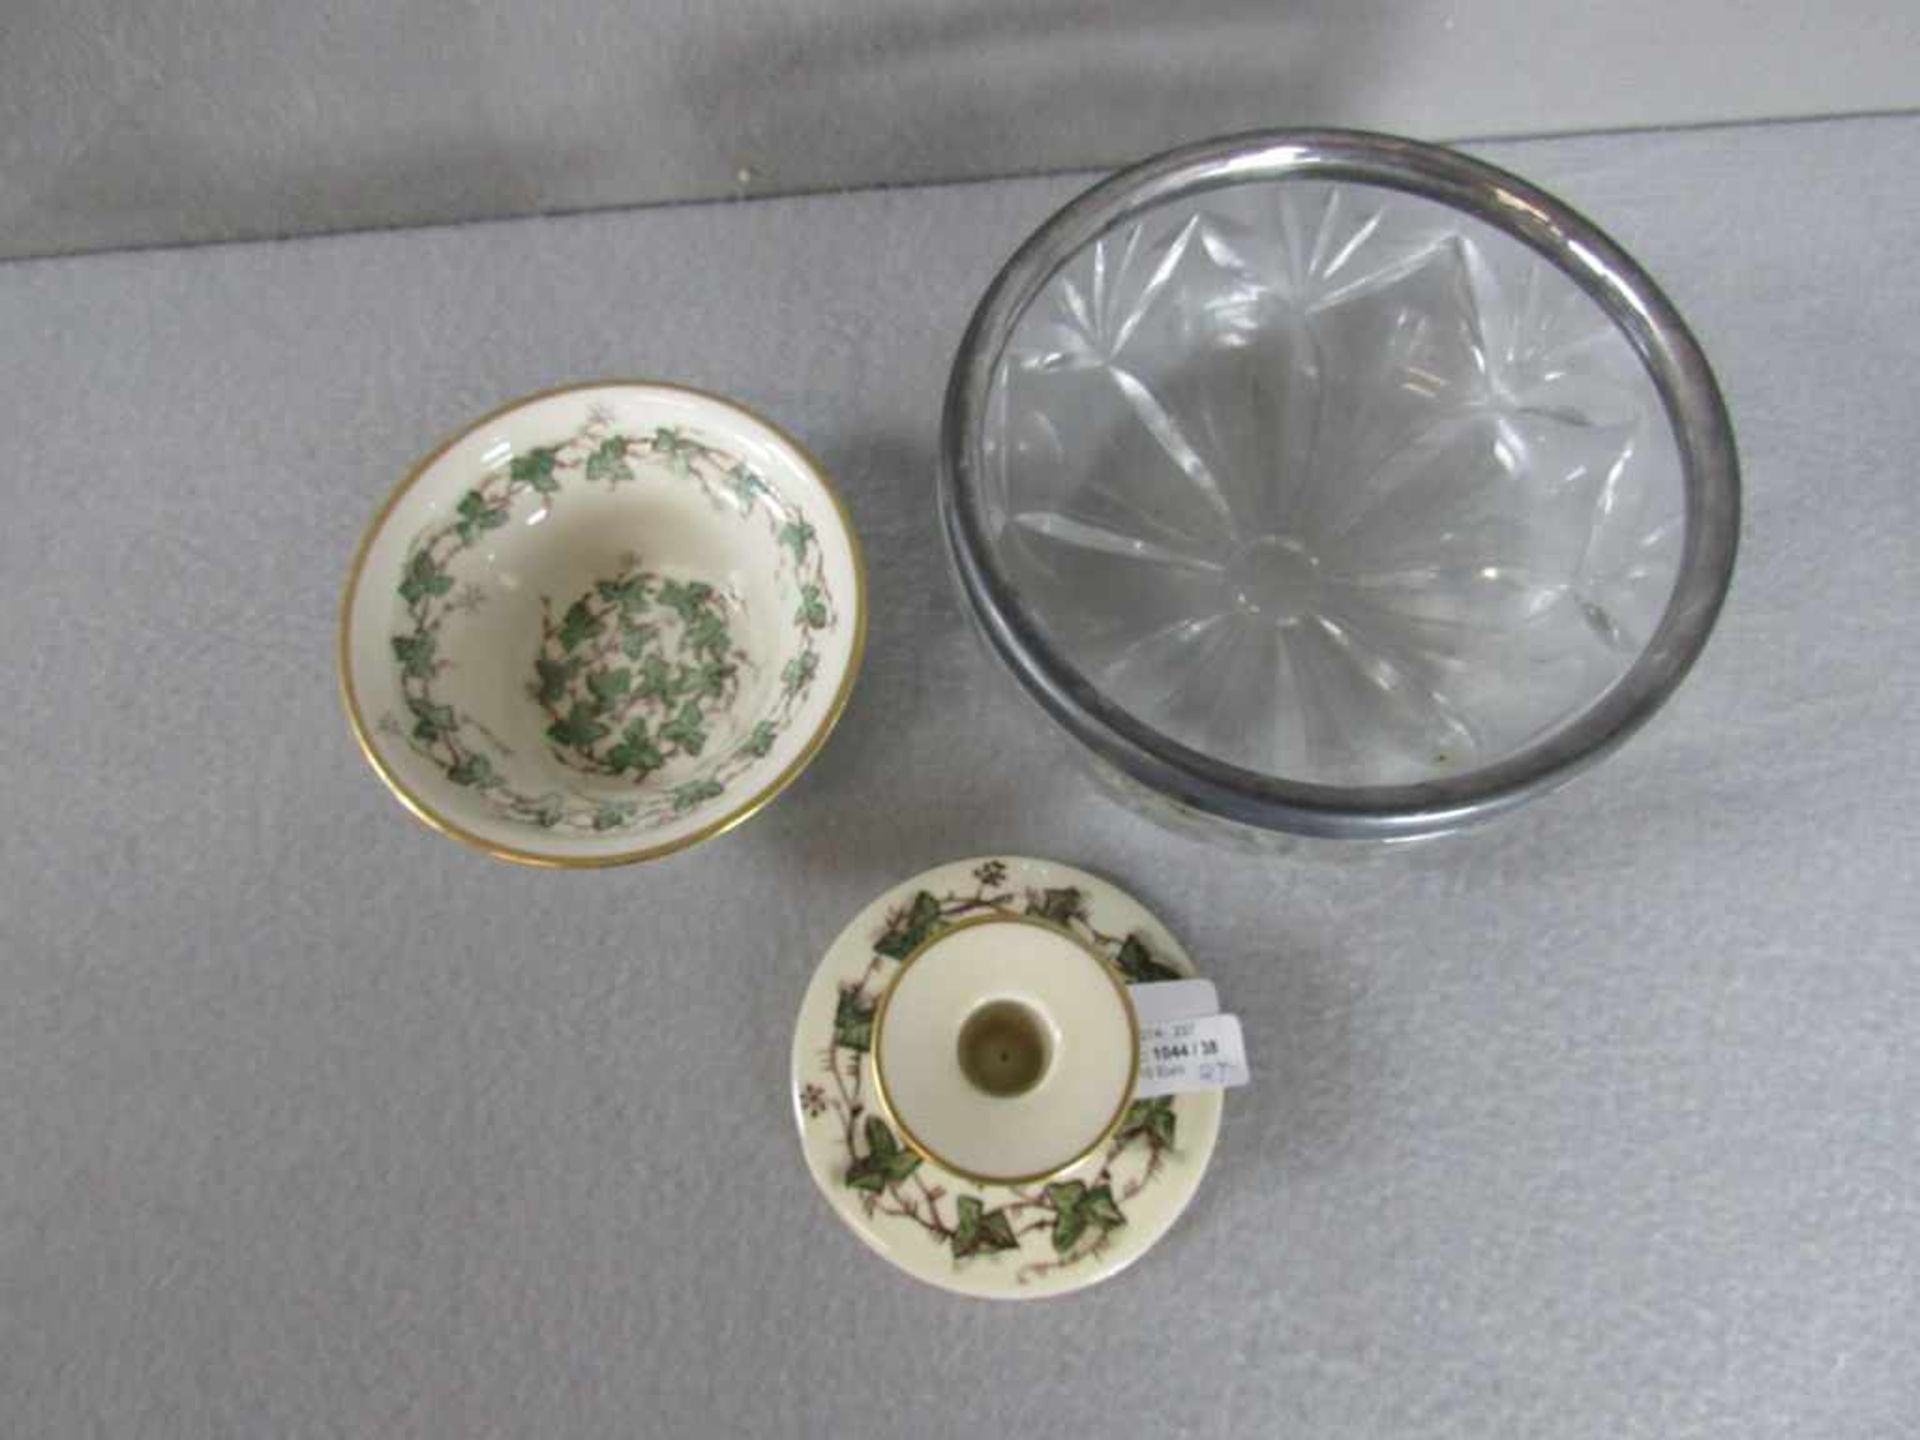 2 Teile Porzellan Royal Kopenhagen 3- Wellenmarke mit Signatur FM und Beigabe Glasschale mit Montur - Image 2 of 2